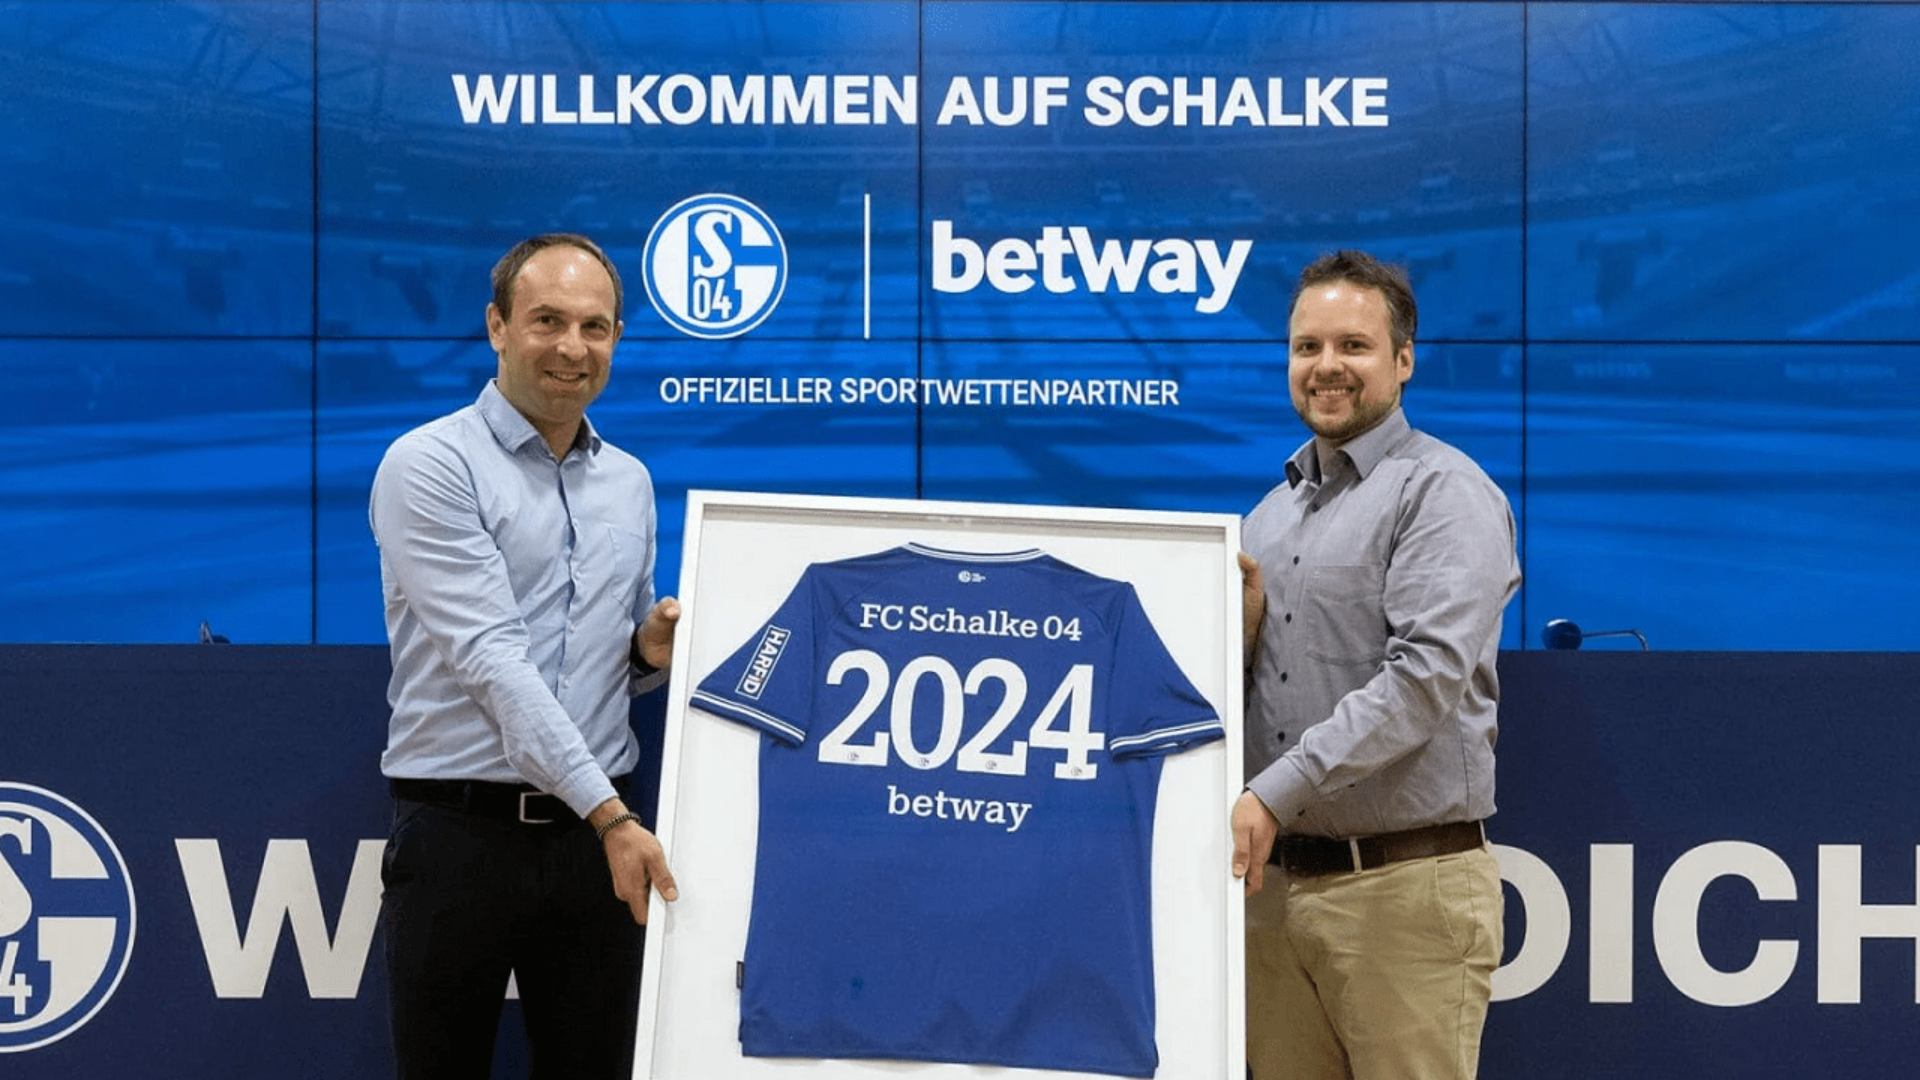 A empresa Betway assinou uma parceria premium de três anos com o clube de futebol alemão FC Schalke 04.